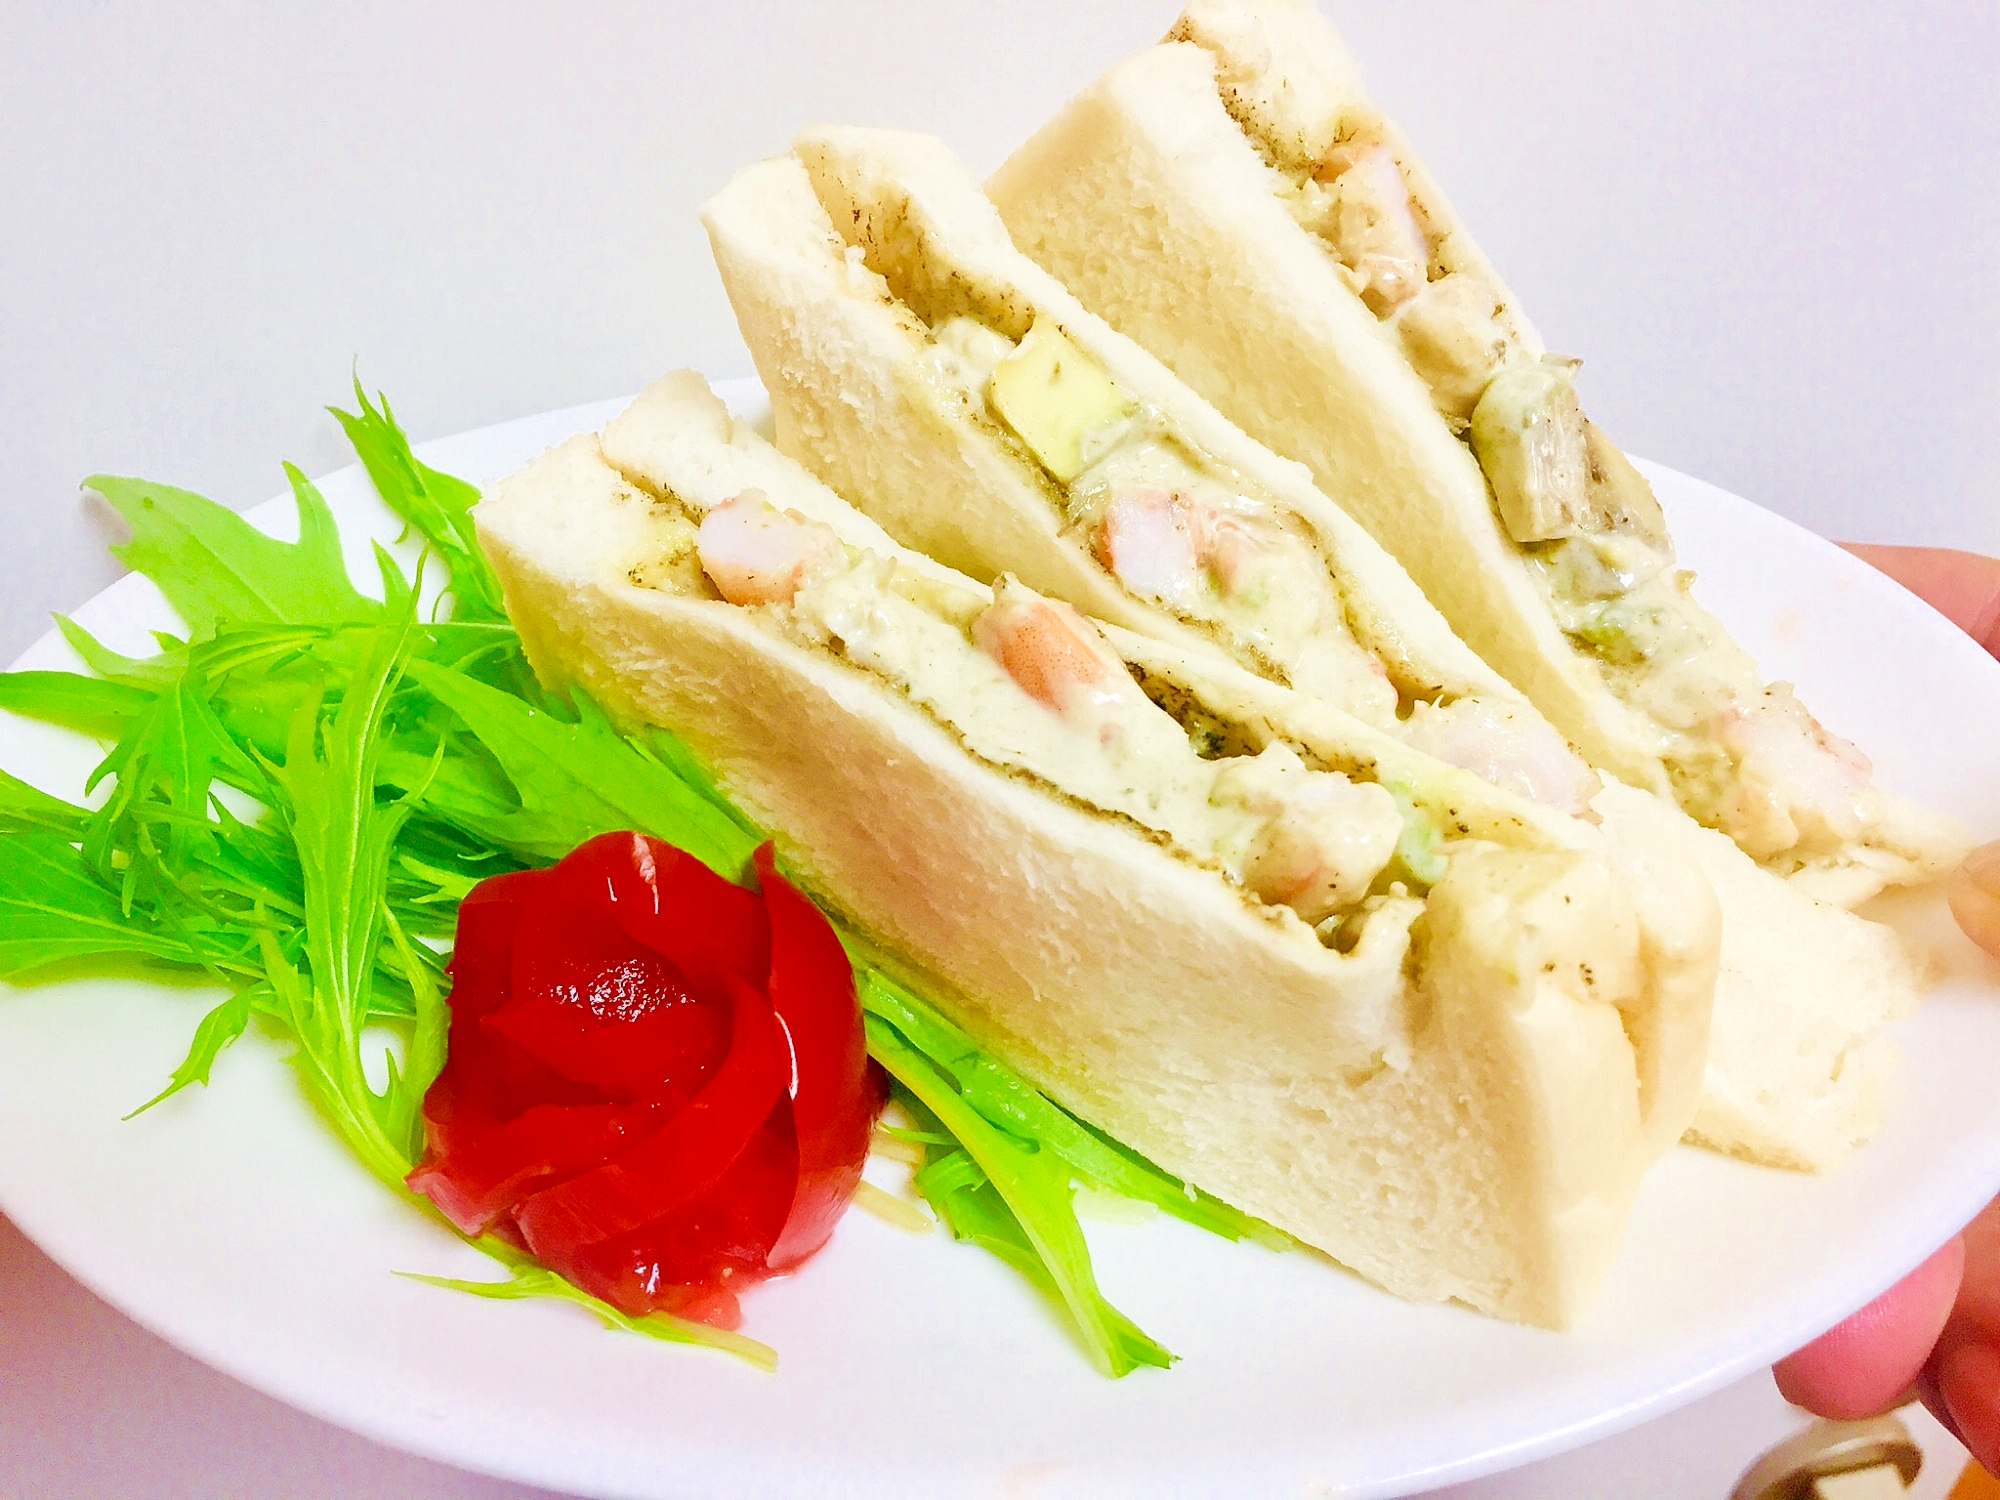 ⭐今日のランチ-「海老とアボカドのサンドイッチ」